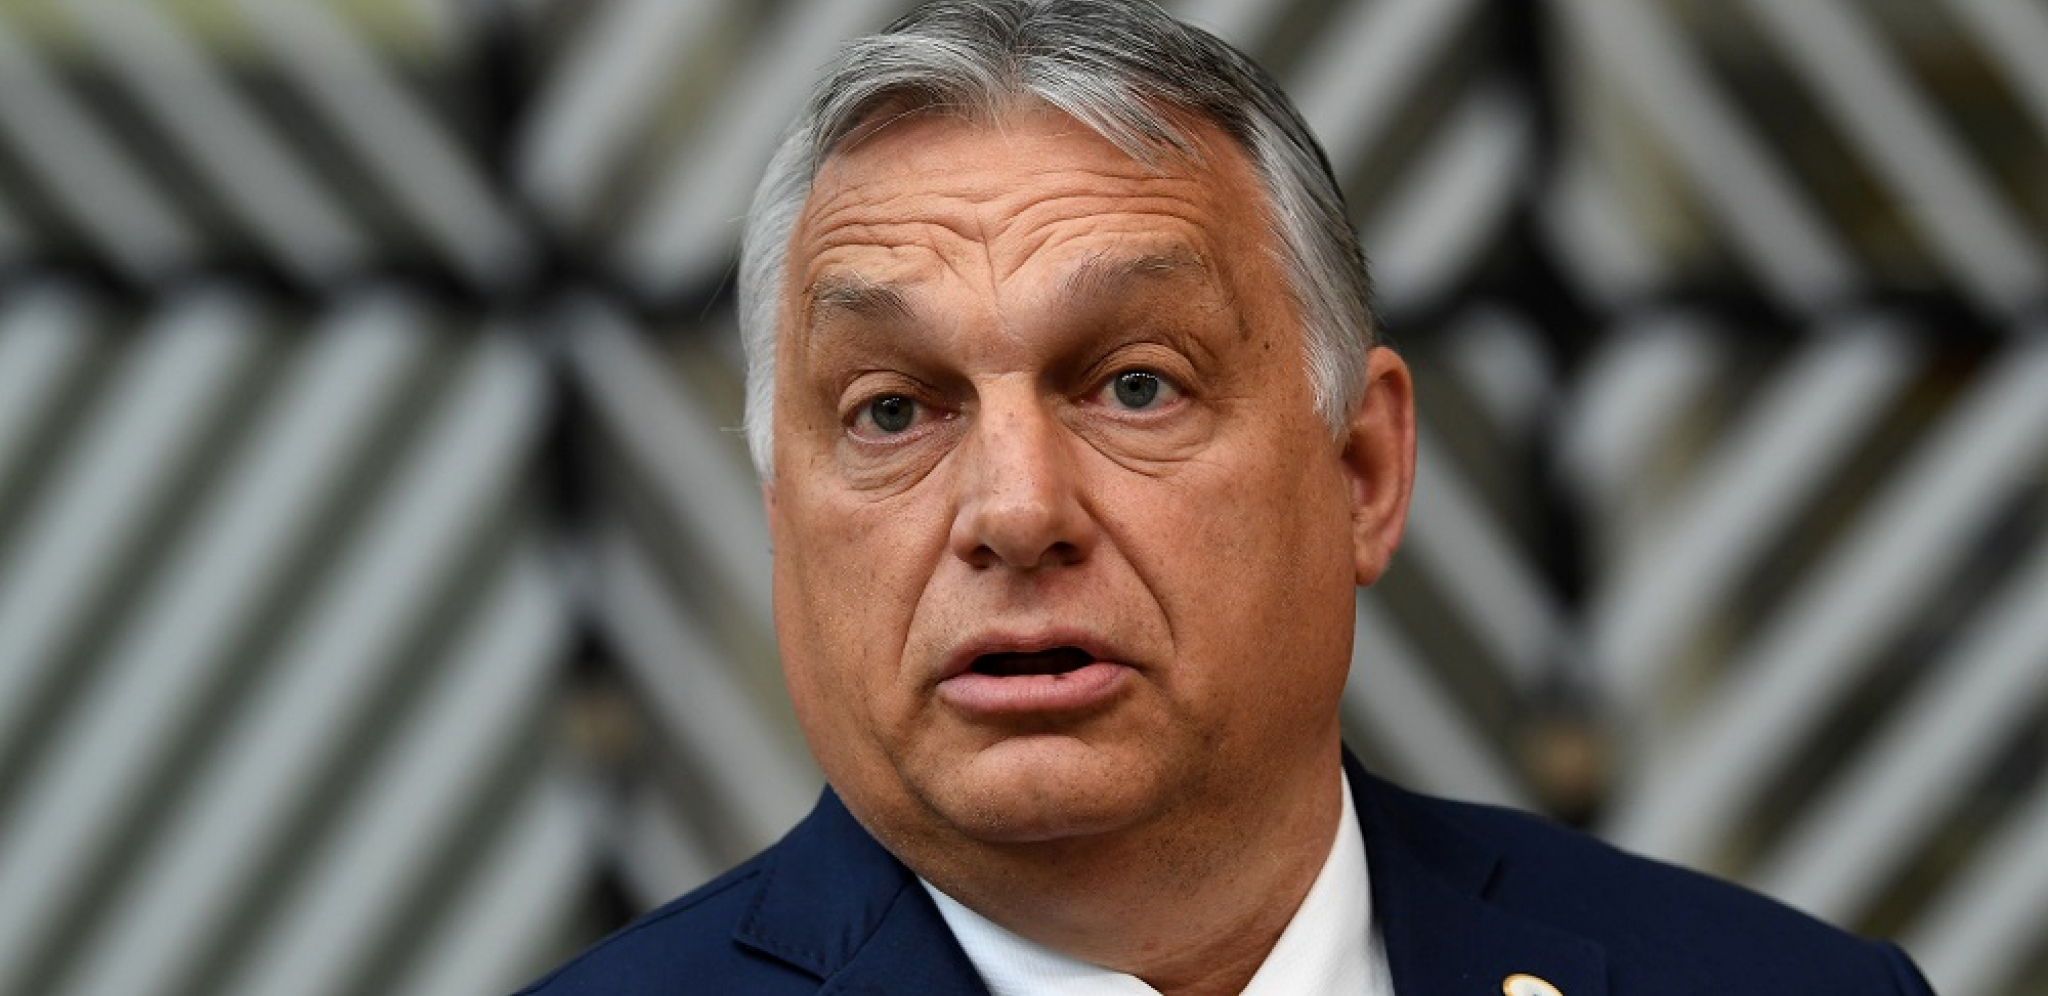 PORESKA POLITIKA JE NACIONALNA STVAR Mađarska protiv uvođenja globalnog minimalnog poreza